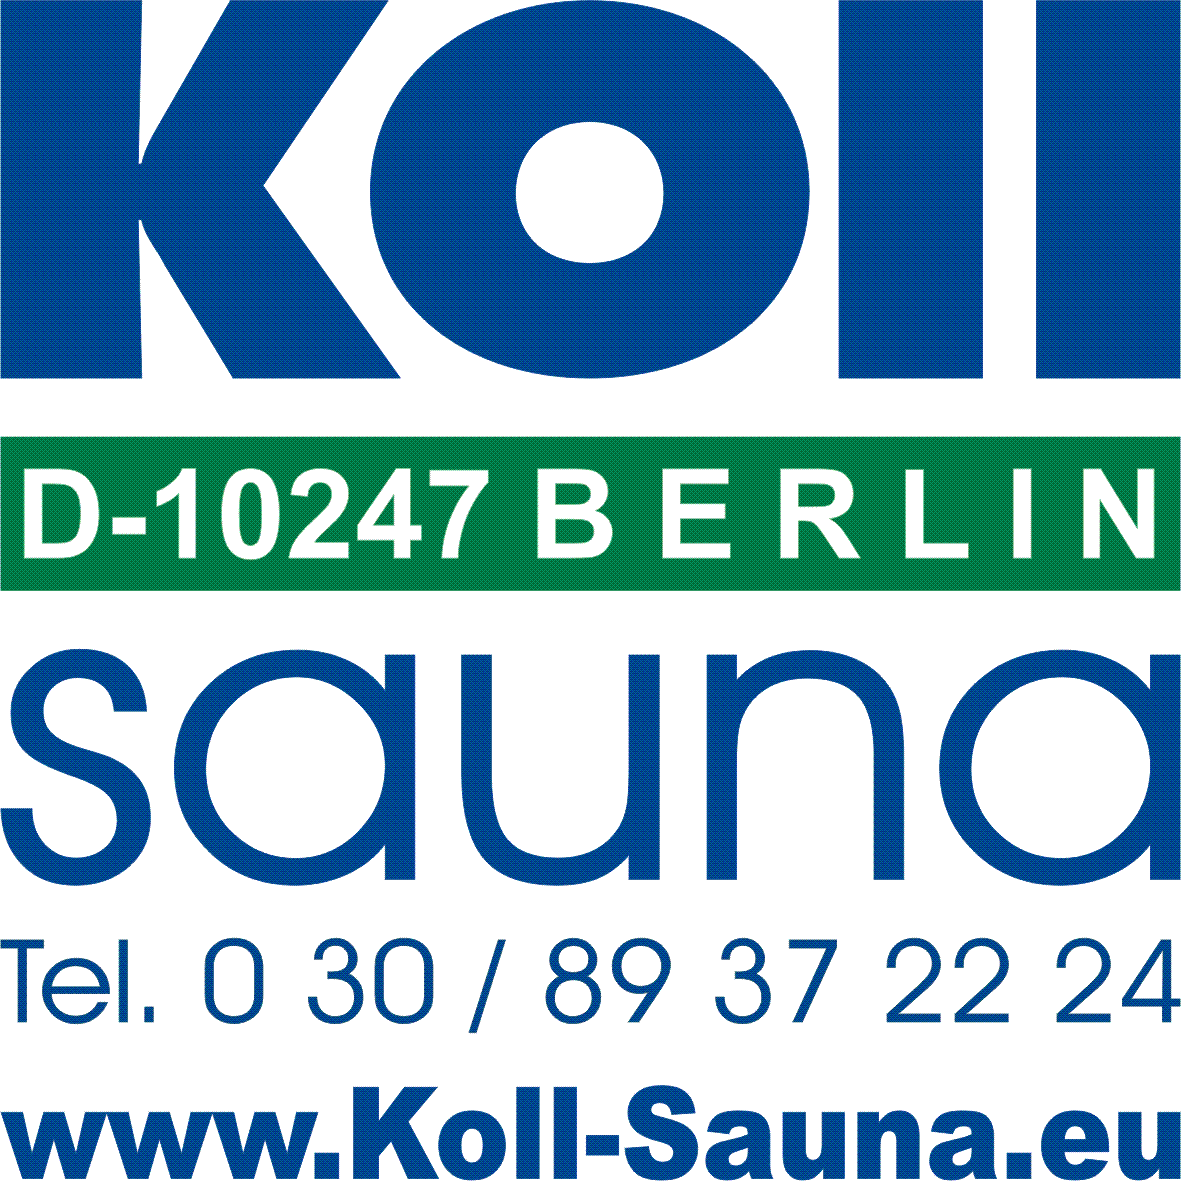 Koll Sauna Niederlassung München ++ Avantgarde Sauna Massivholzsauna ++ direkt vom Saunahersteller und Saunabau Koll ++ Marktführer für Sauna und Kolldarium kombiniert ++ Hersteller der Bundestagssauna in Berlin ++